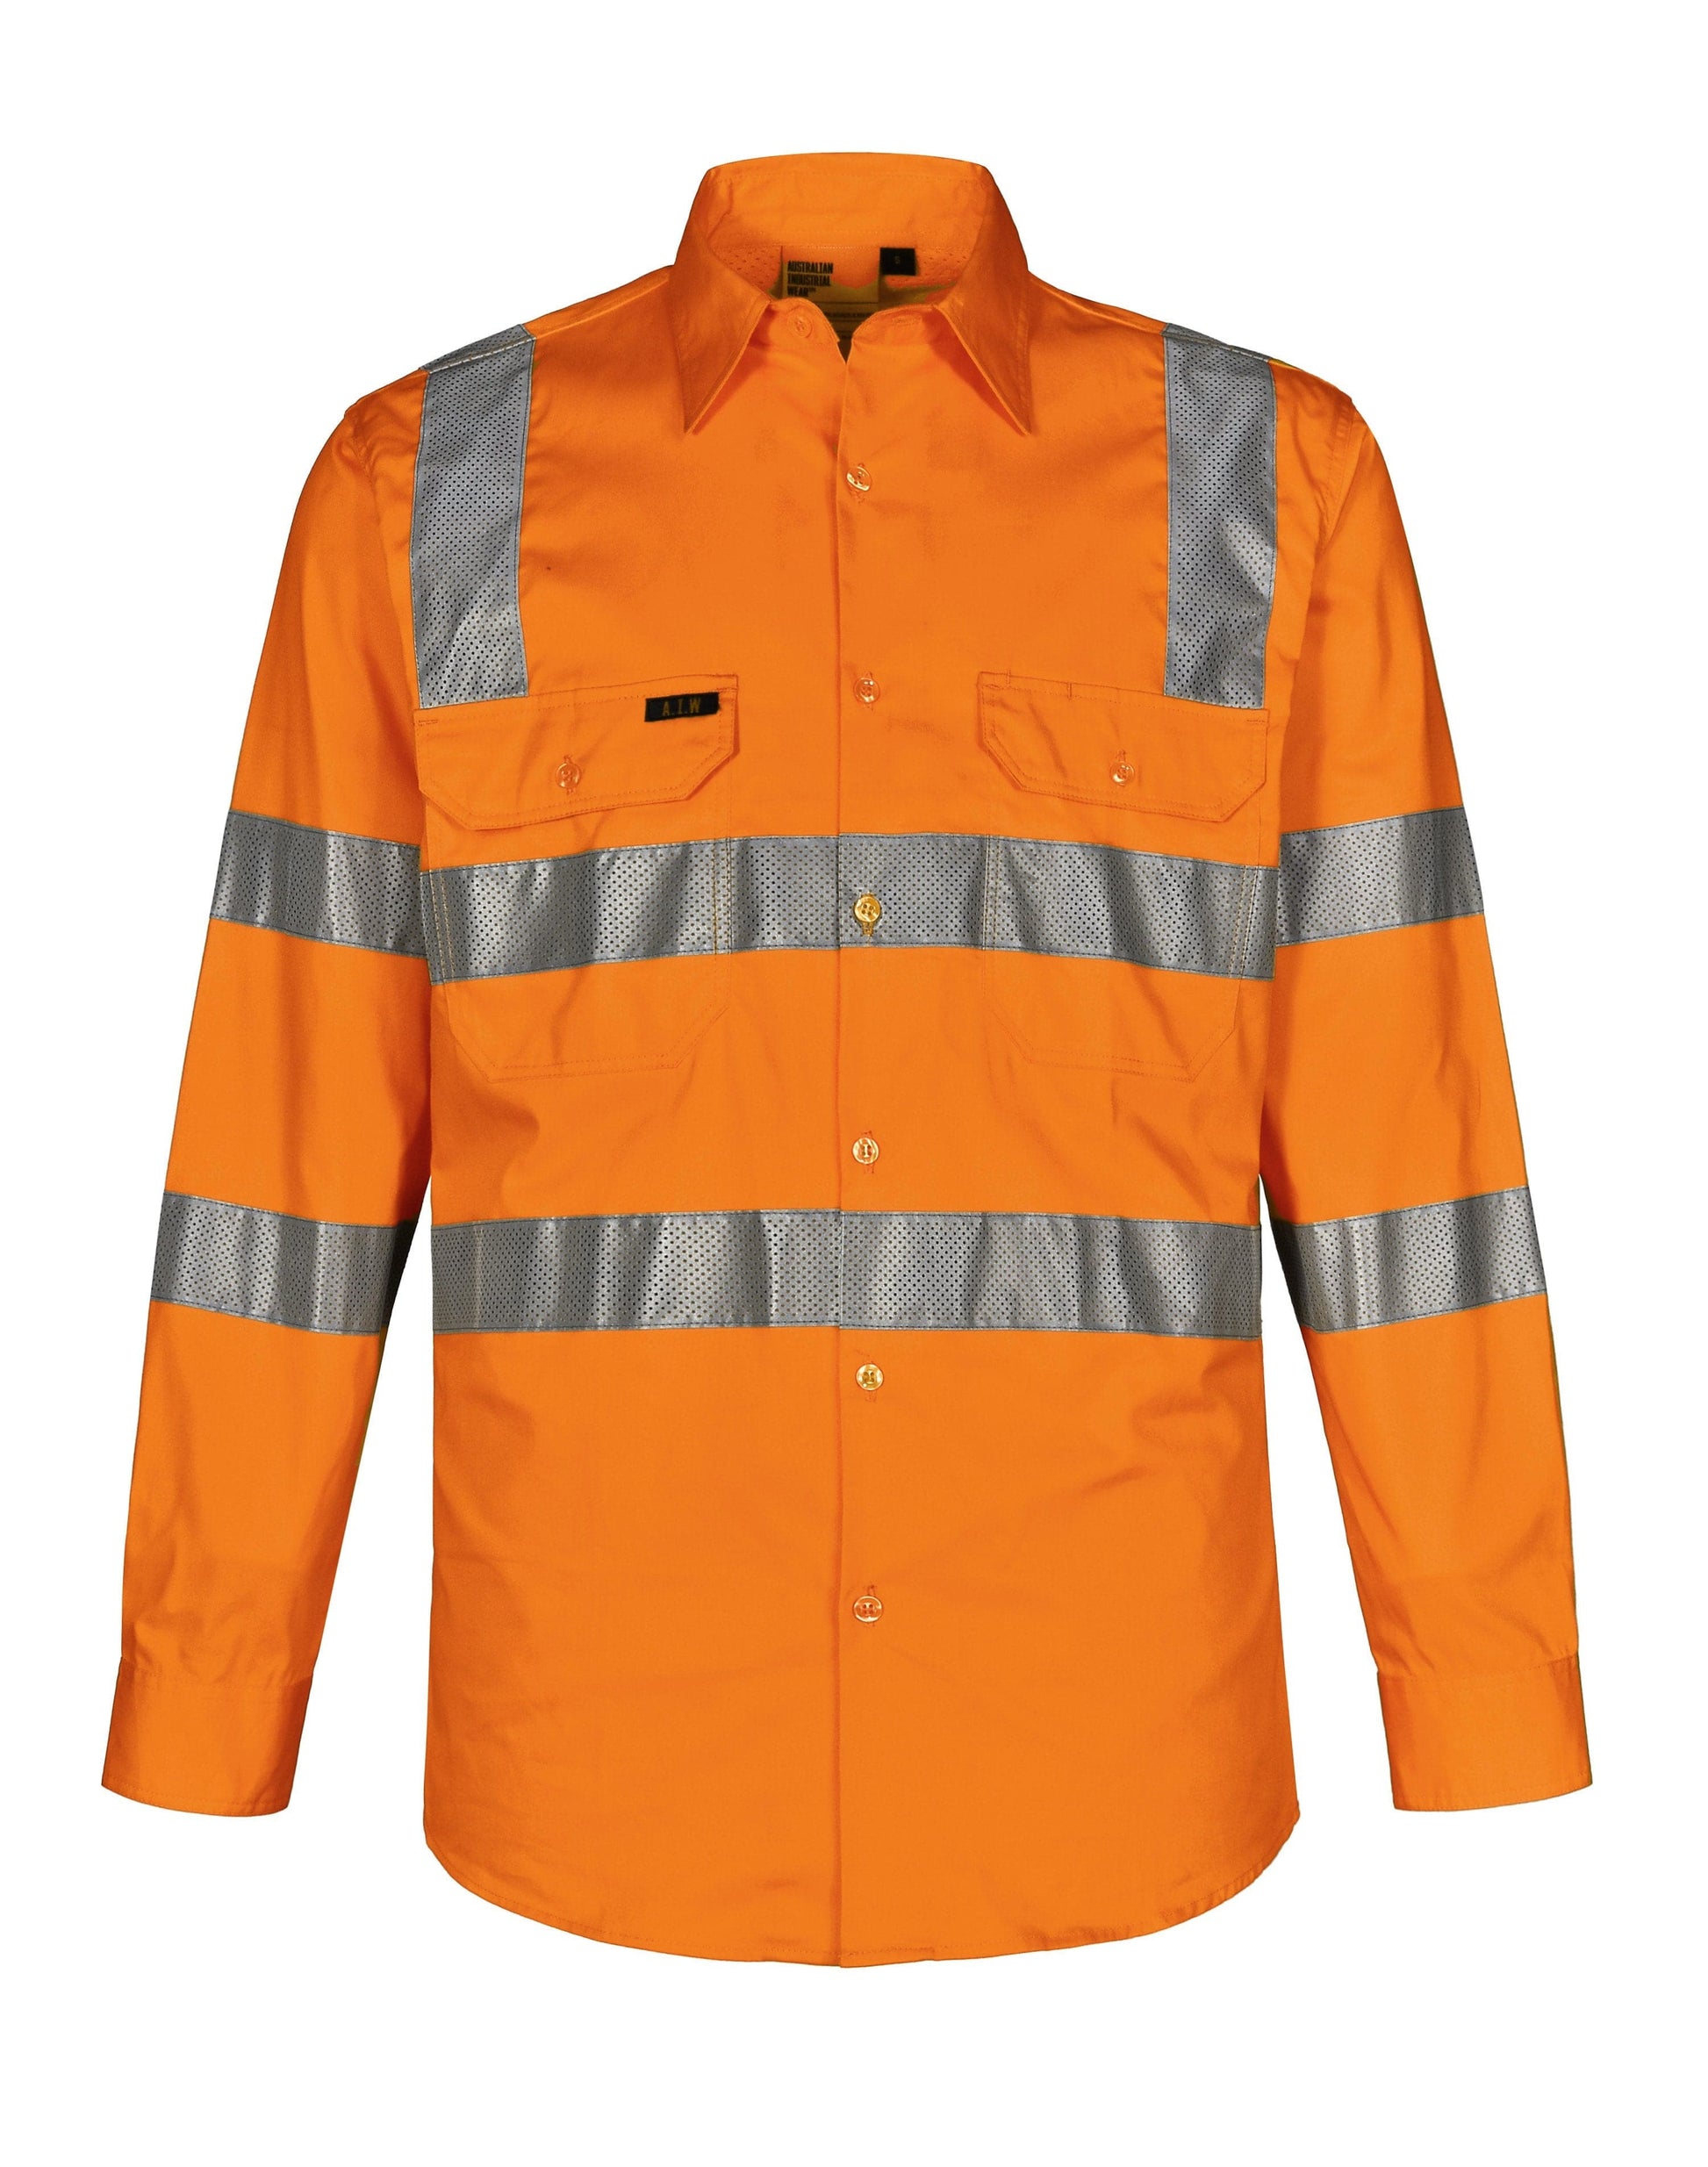 Unisex Biomotion Vic Rail Light Weight Safety Shirt SW55 Active Wear Winning Spirit Orange 2XS 